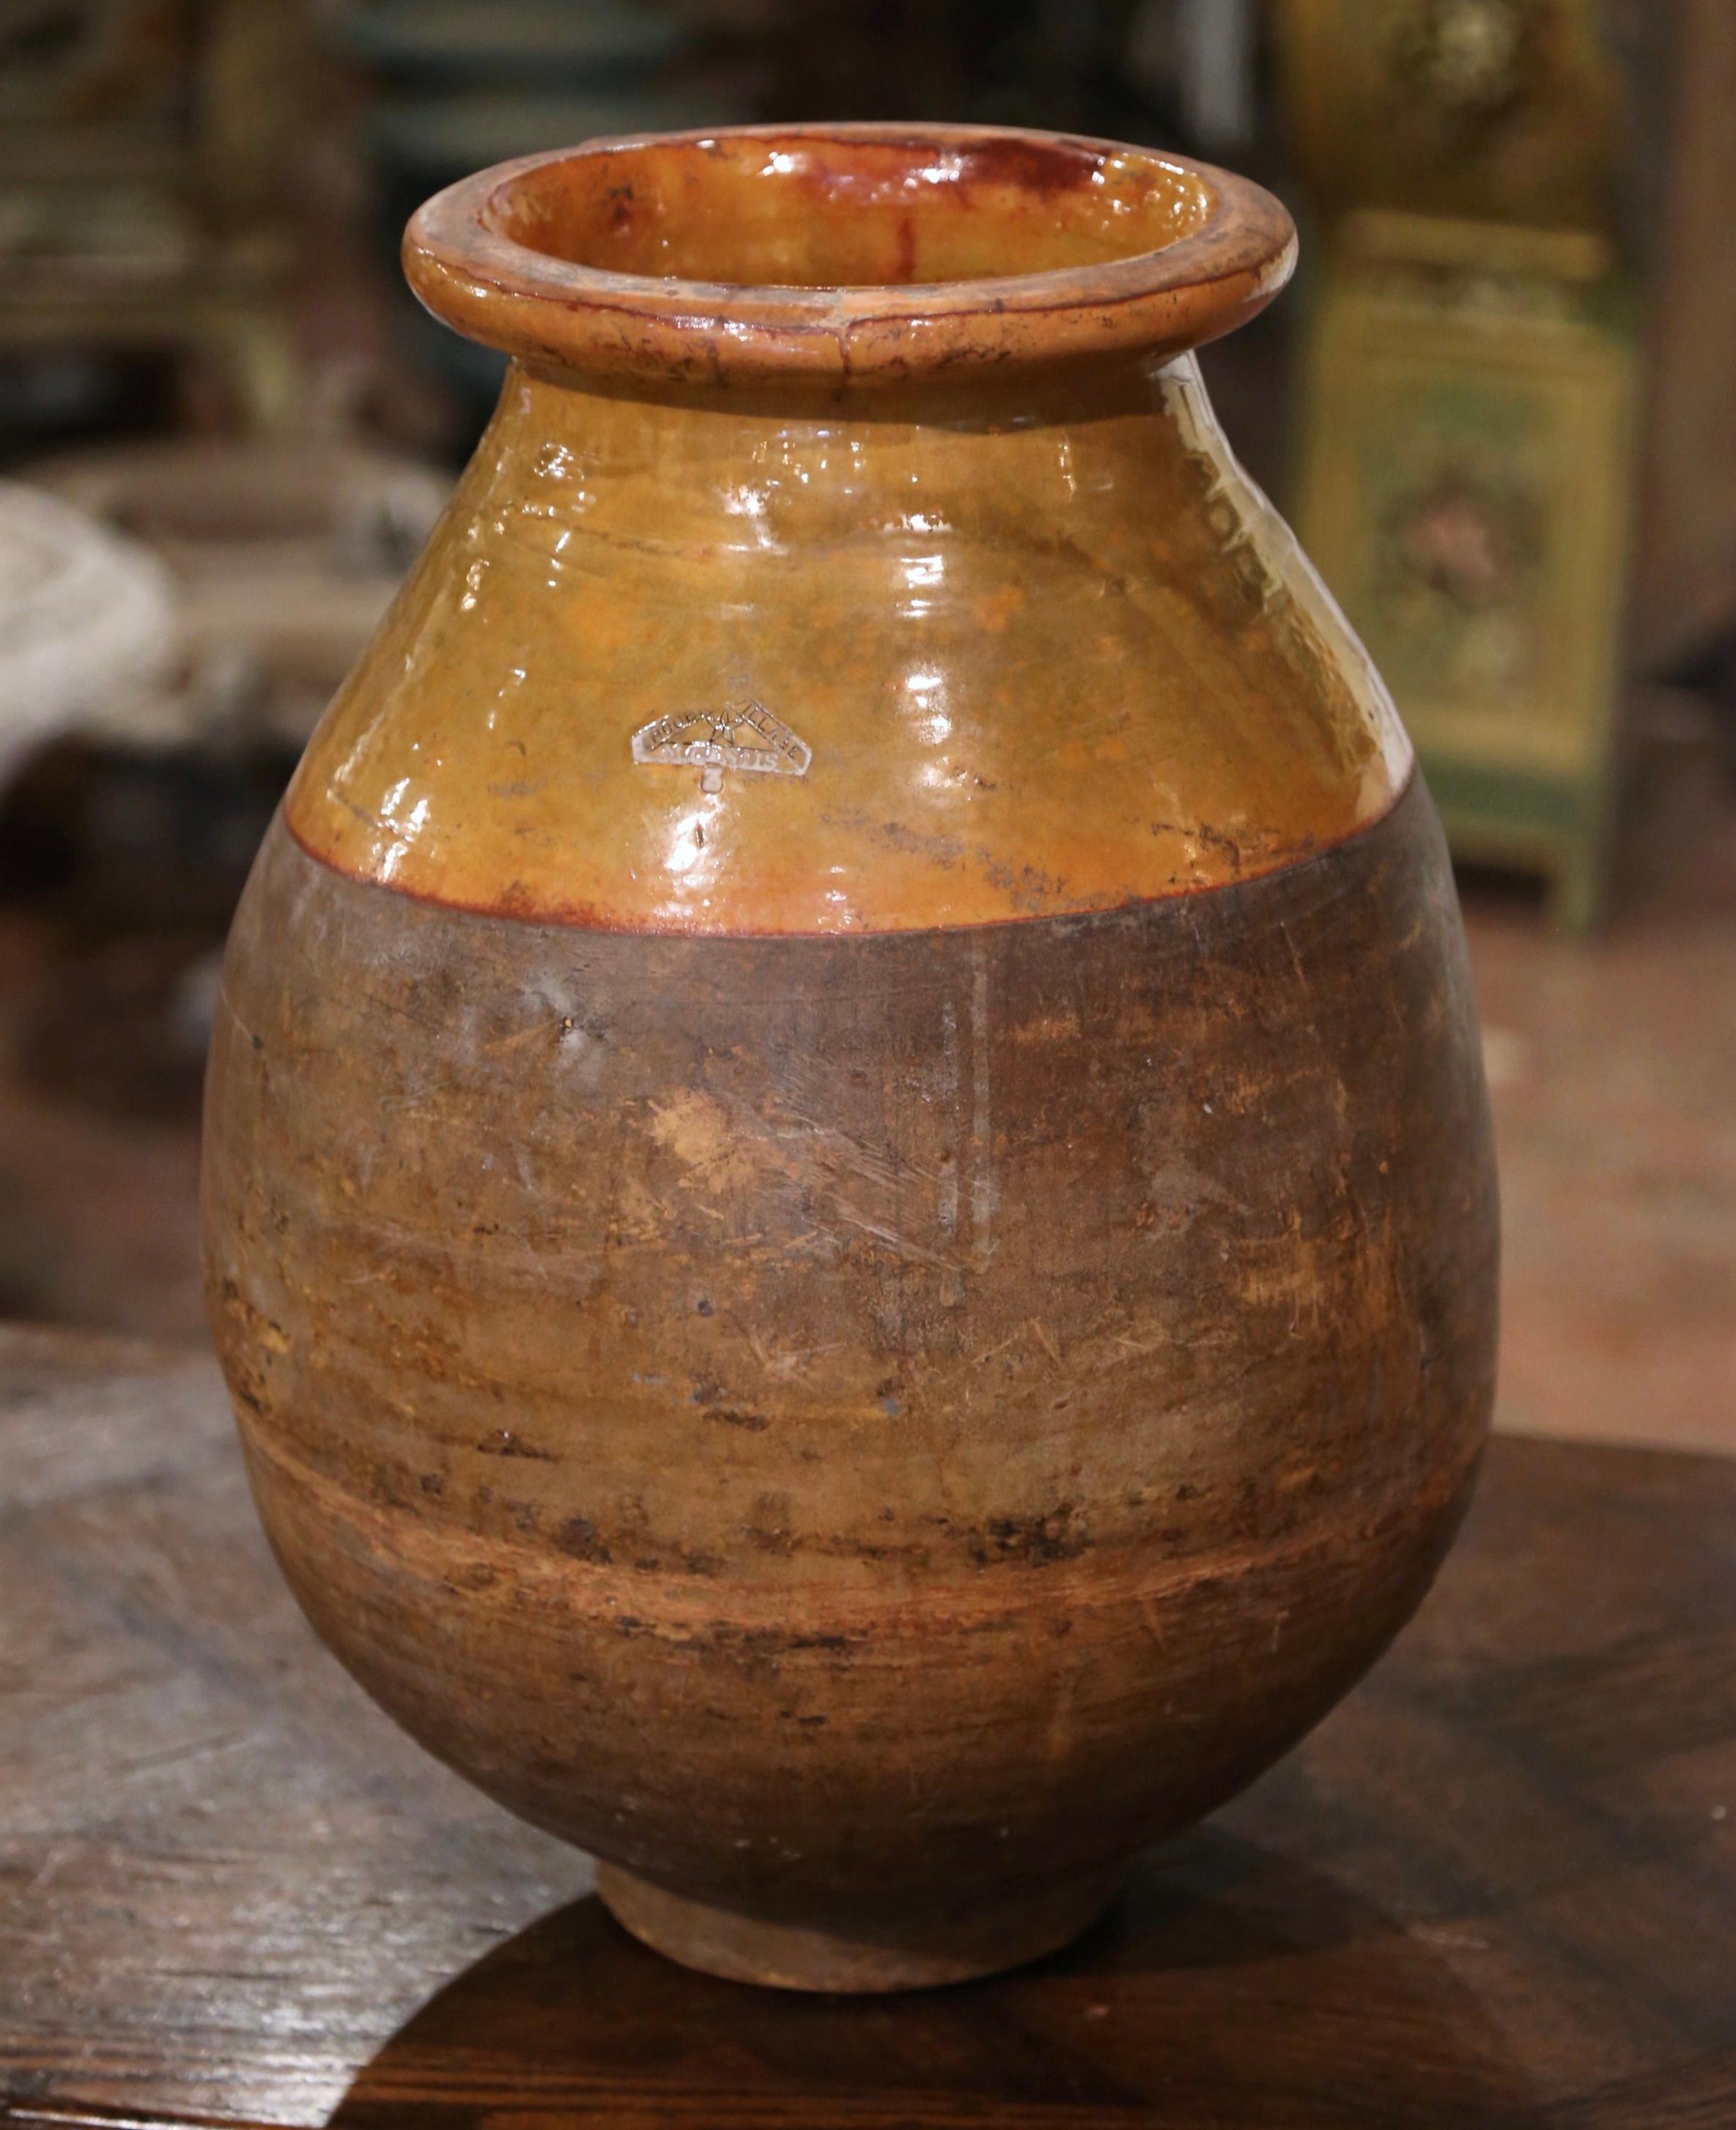 Dieser antike Olivenölkrug aus Steingut wurde um 1880 in Südfrankreich hergestellt. Die Terrakotta-Vase aus blondem Ton ist neutral in der Farbe und hat eine traditionelle runde Form. Die rustikale, von der Zeit gezeichnete Kanne weist eine gelbe